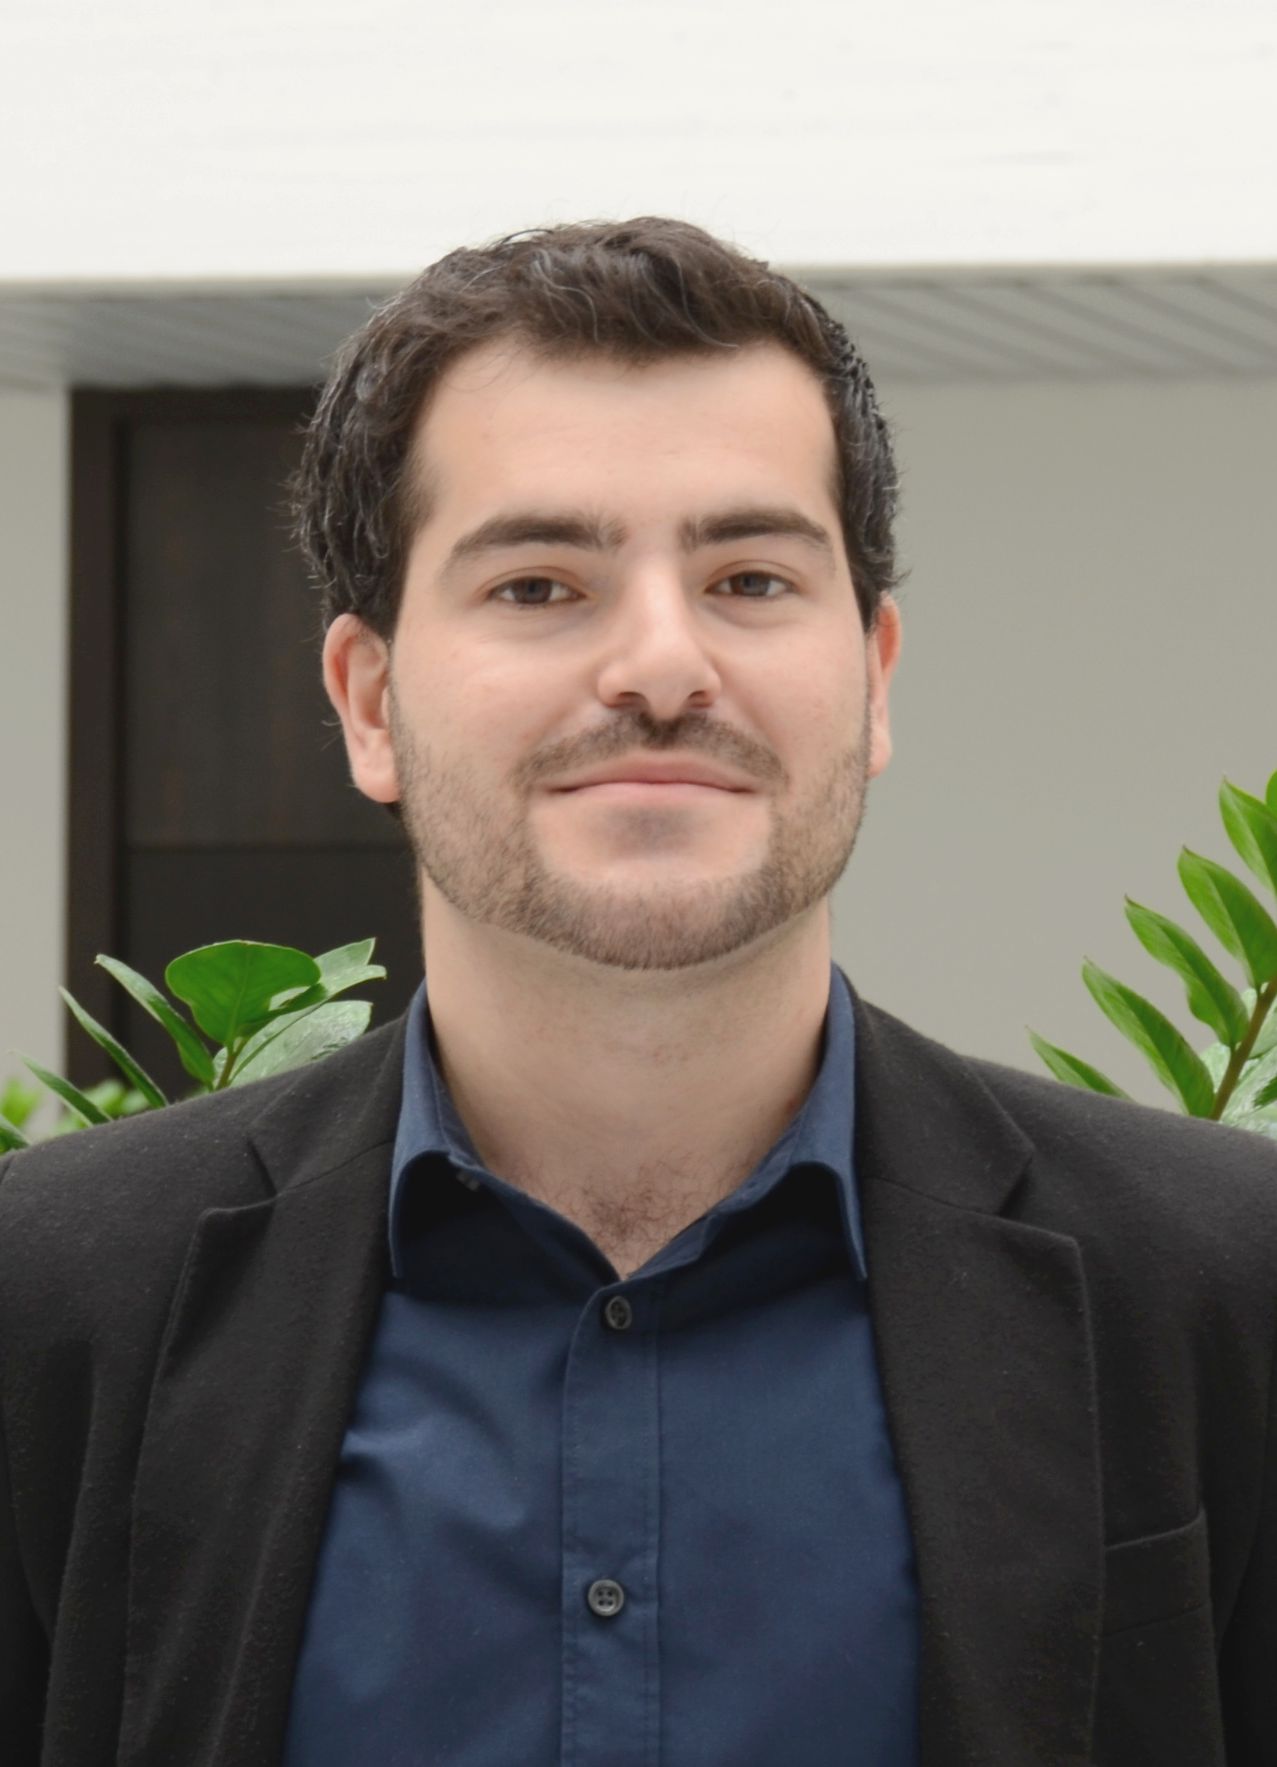 Volkswirt <b>Mustafa Coban</b> ist wissenschaftlicher Mitarbeiter und Doktorand am ... - CobanM